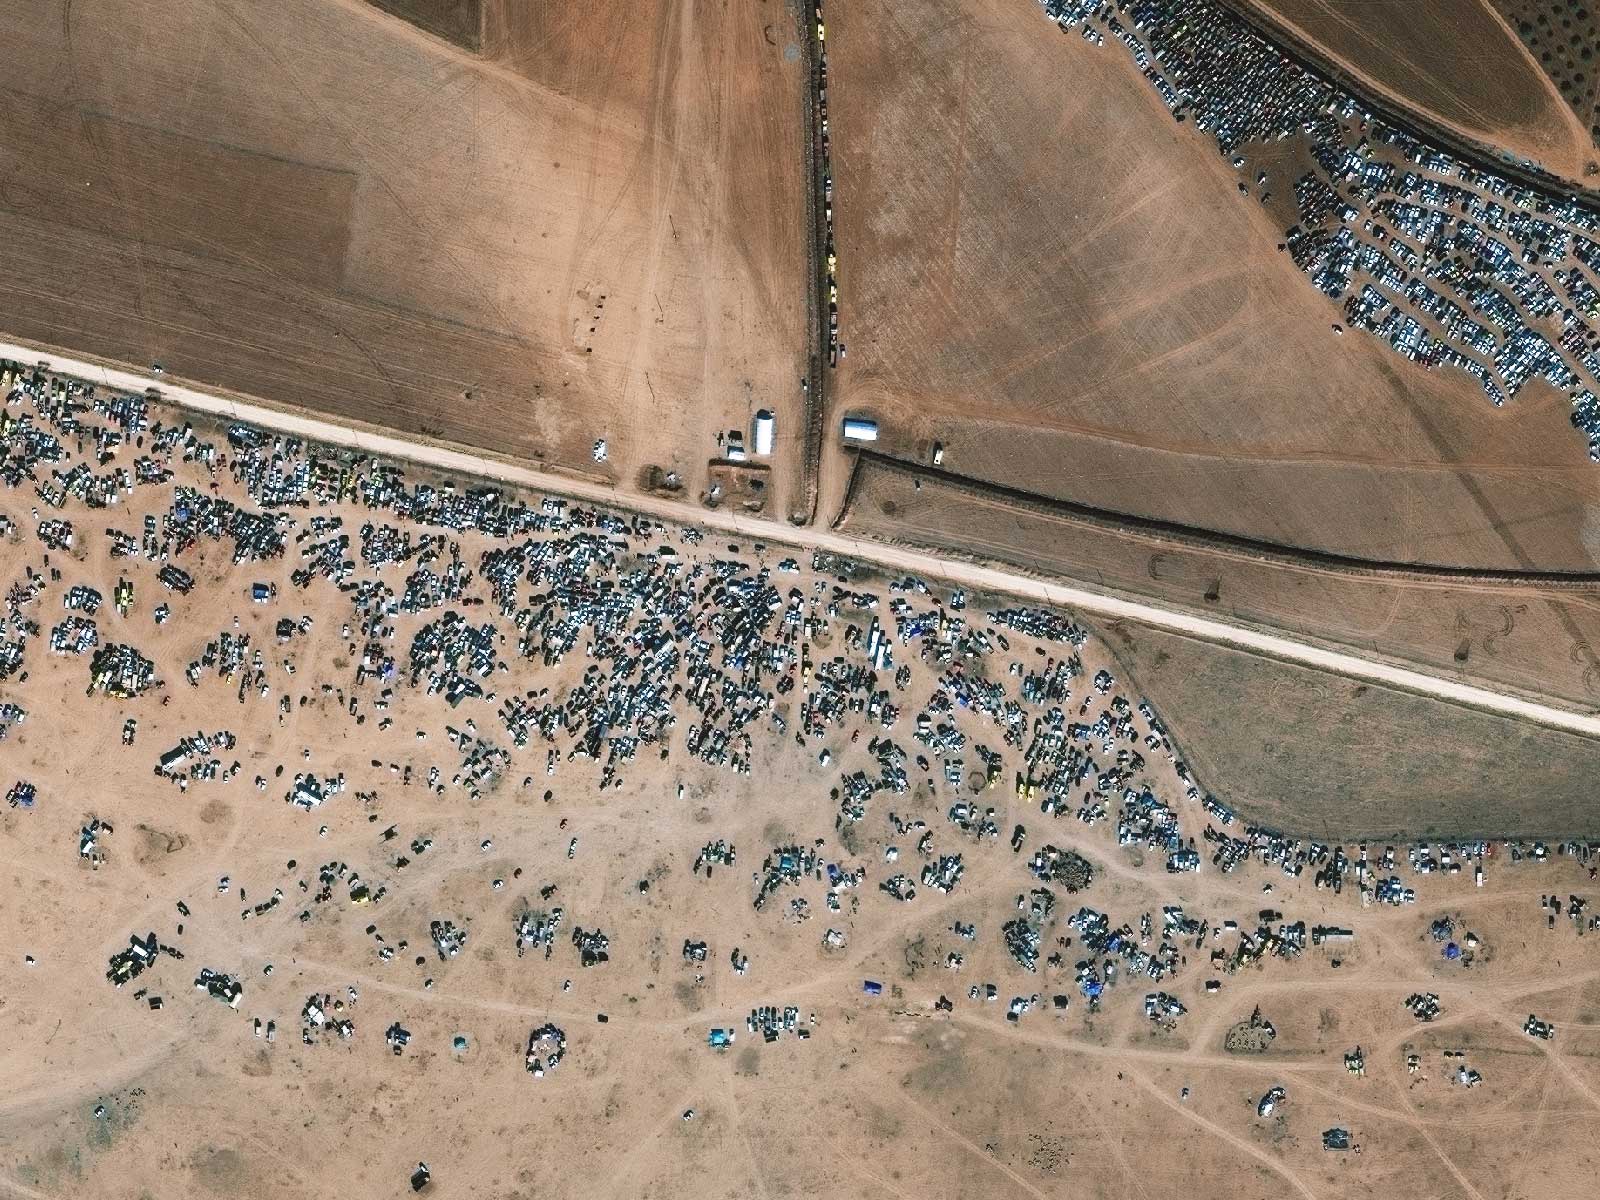 Kobani, Syria, Nov. 6, 2014.